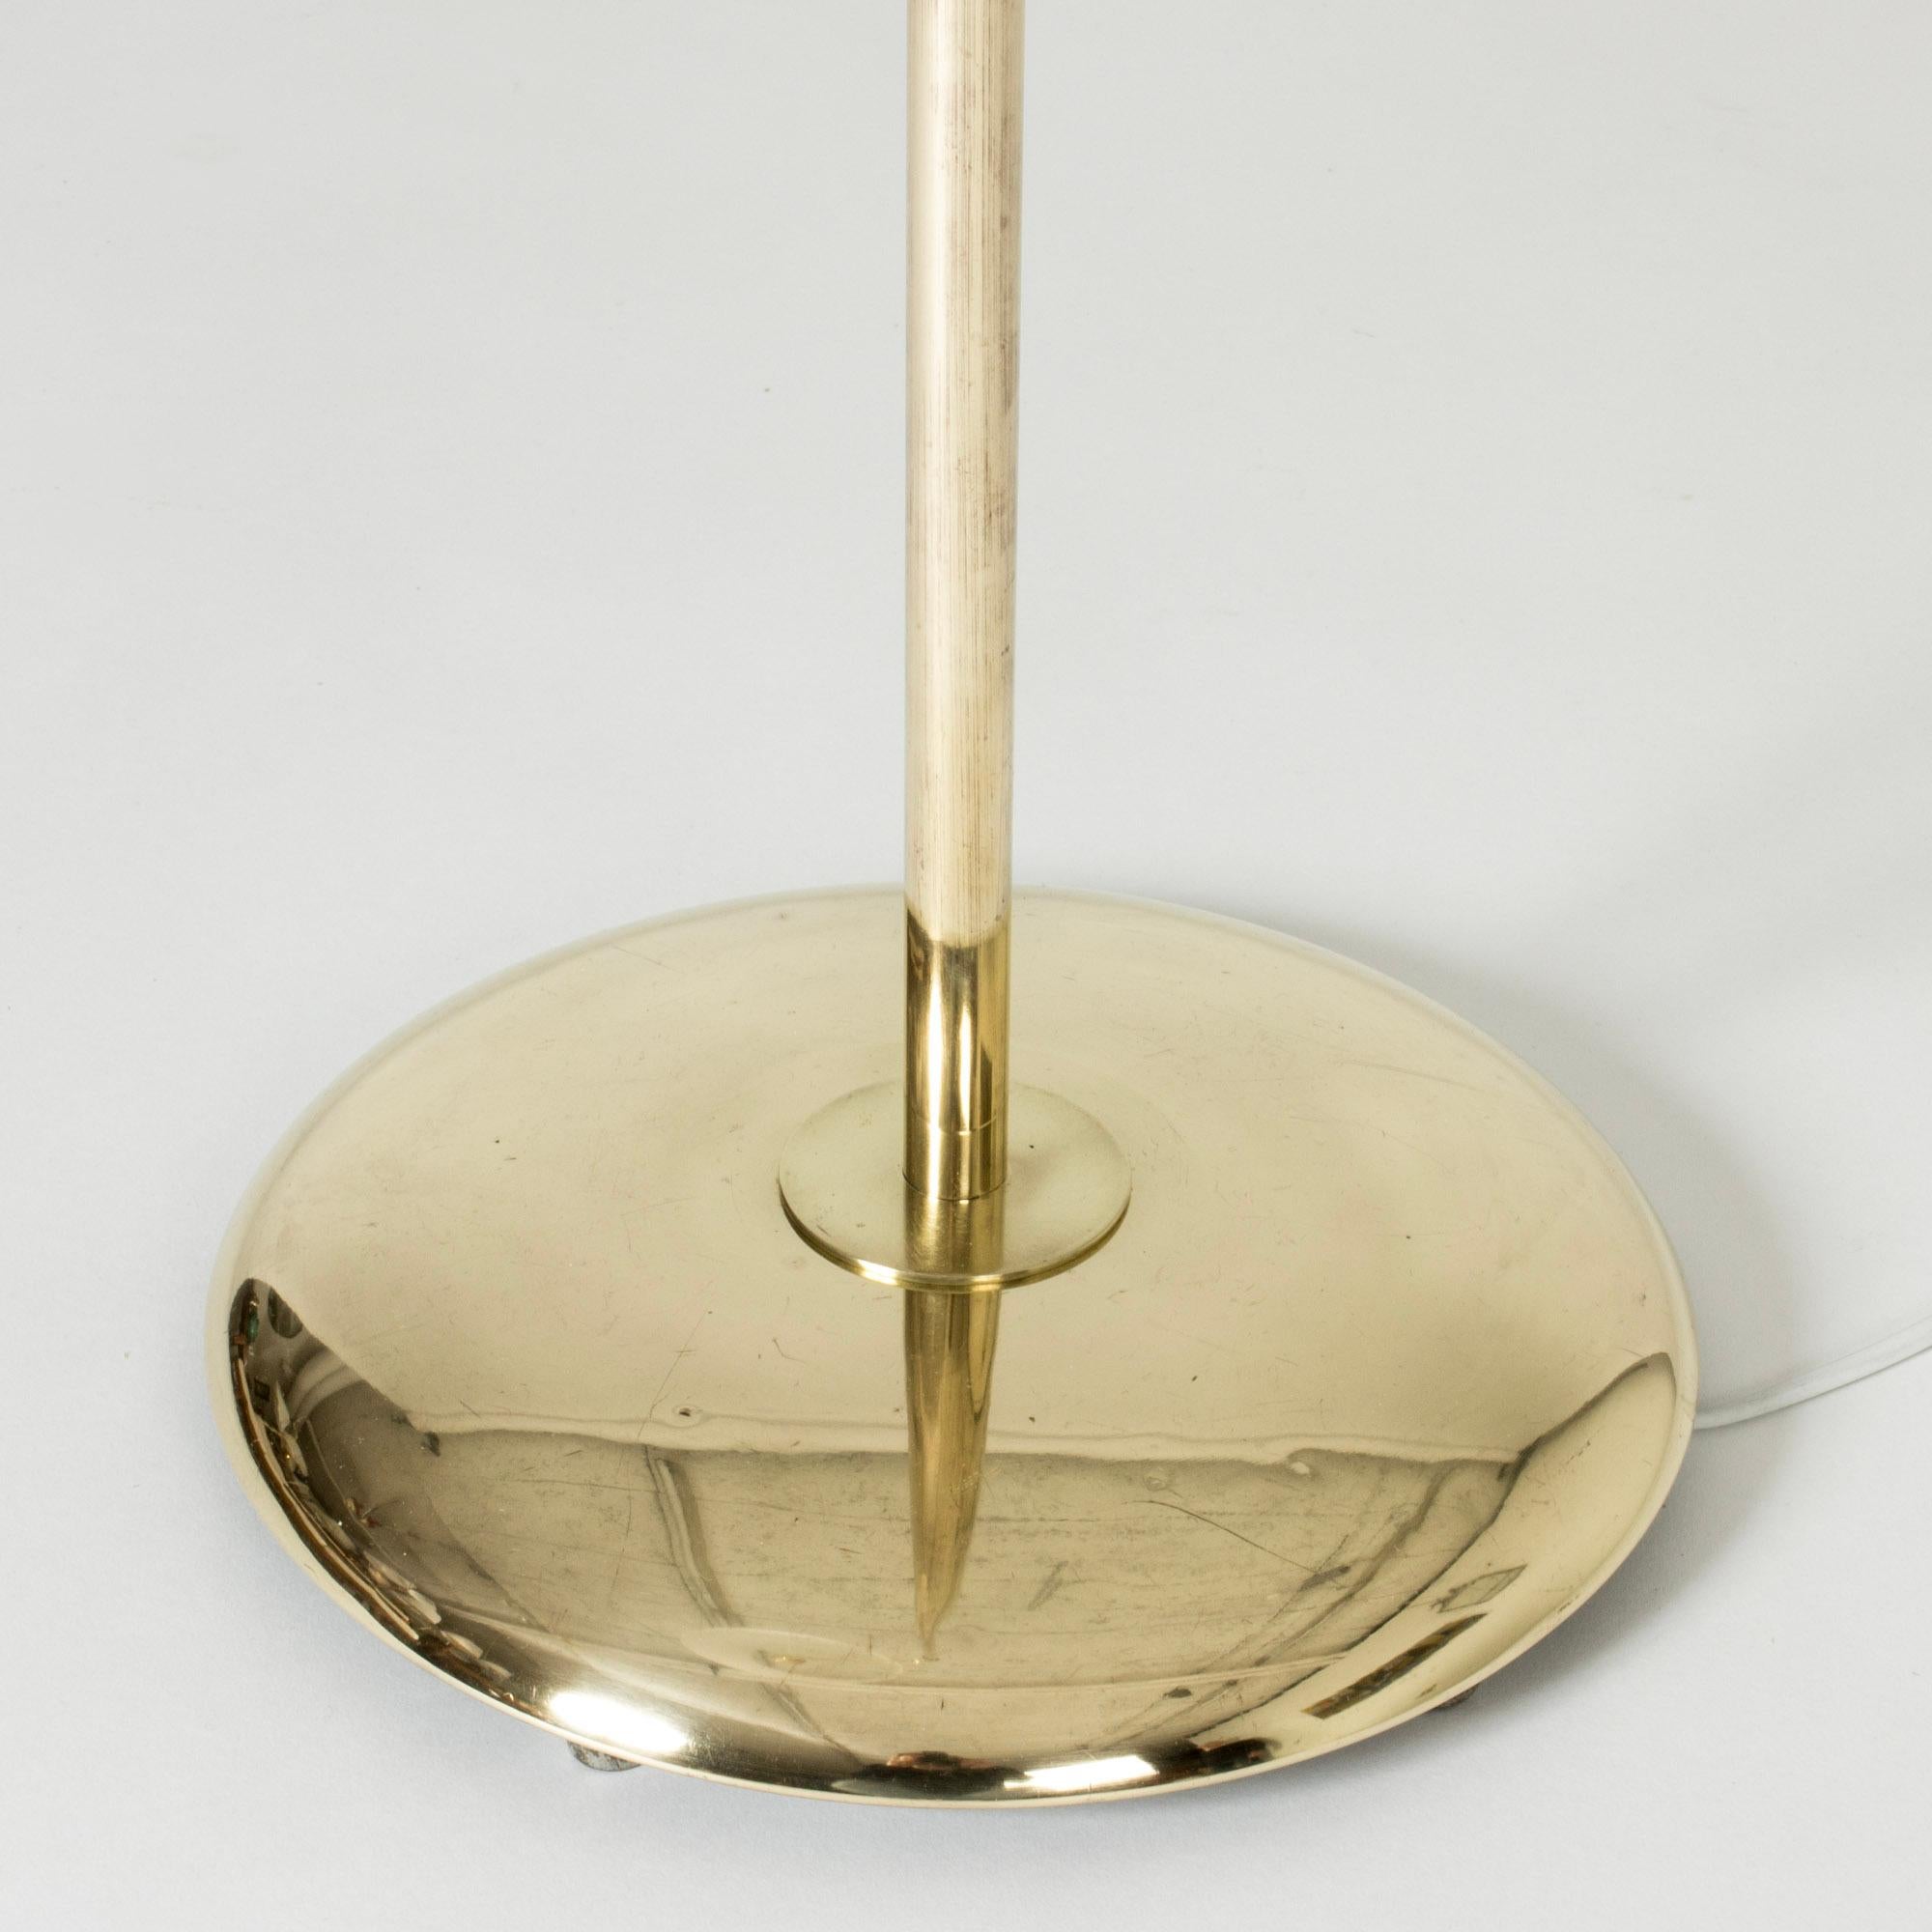 Scandinavian Modern Scandinavian Midcentury Brass Floor Lamp from Nk, Sweden, 1950s For Sale